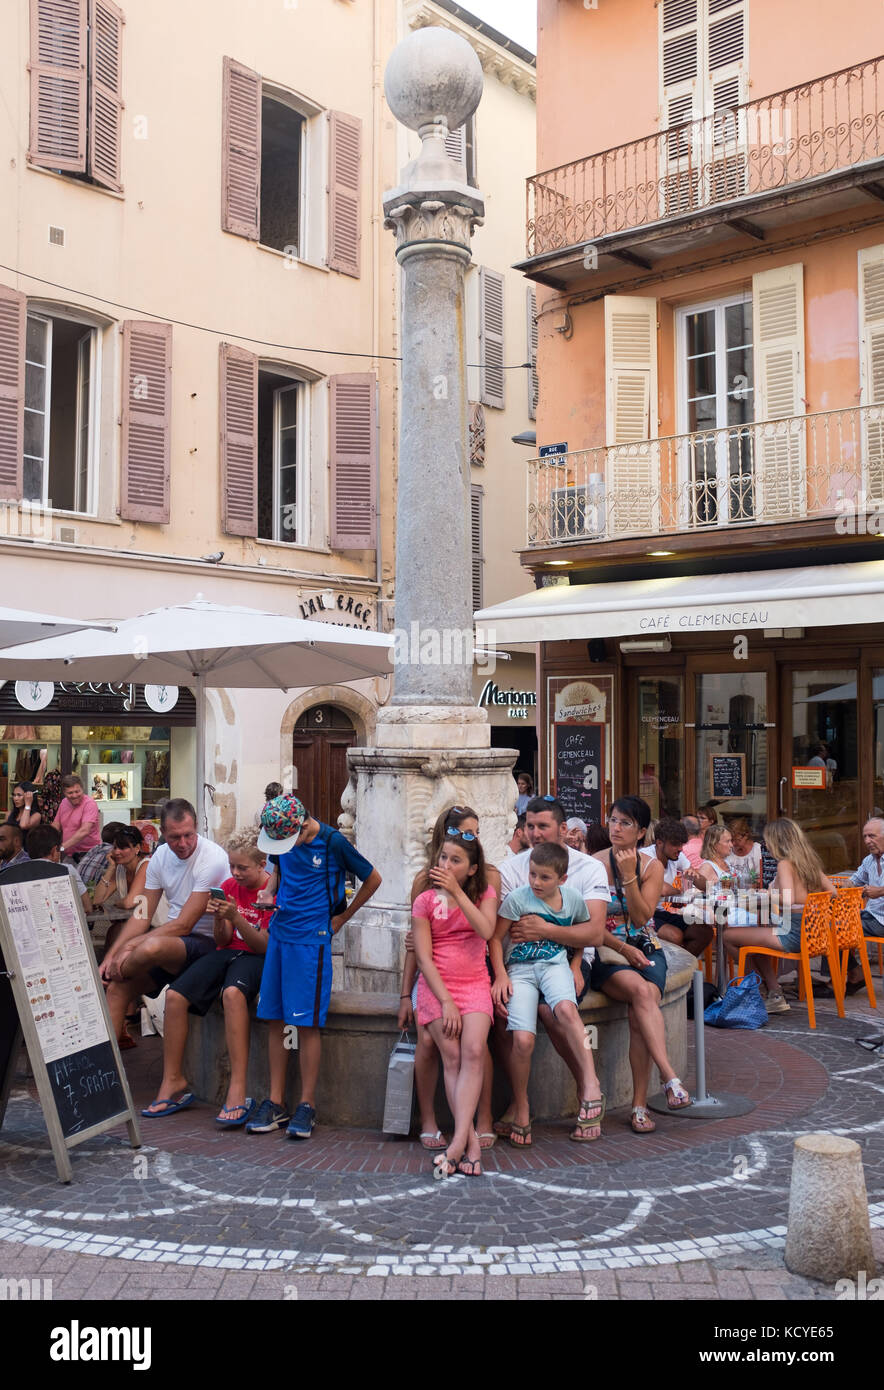 Die Menschen Essen im Cafe clemenceau in der Nähe von Fontaine de Vakantiehuis, Antibes, Cote d'Azur, Provence-alpes-côte d'Azur, Frankreich. Stockfoto